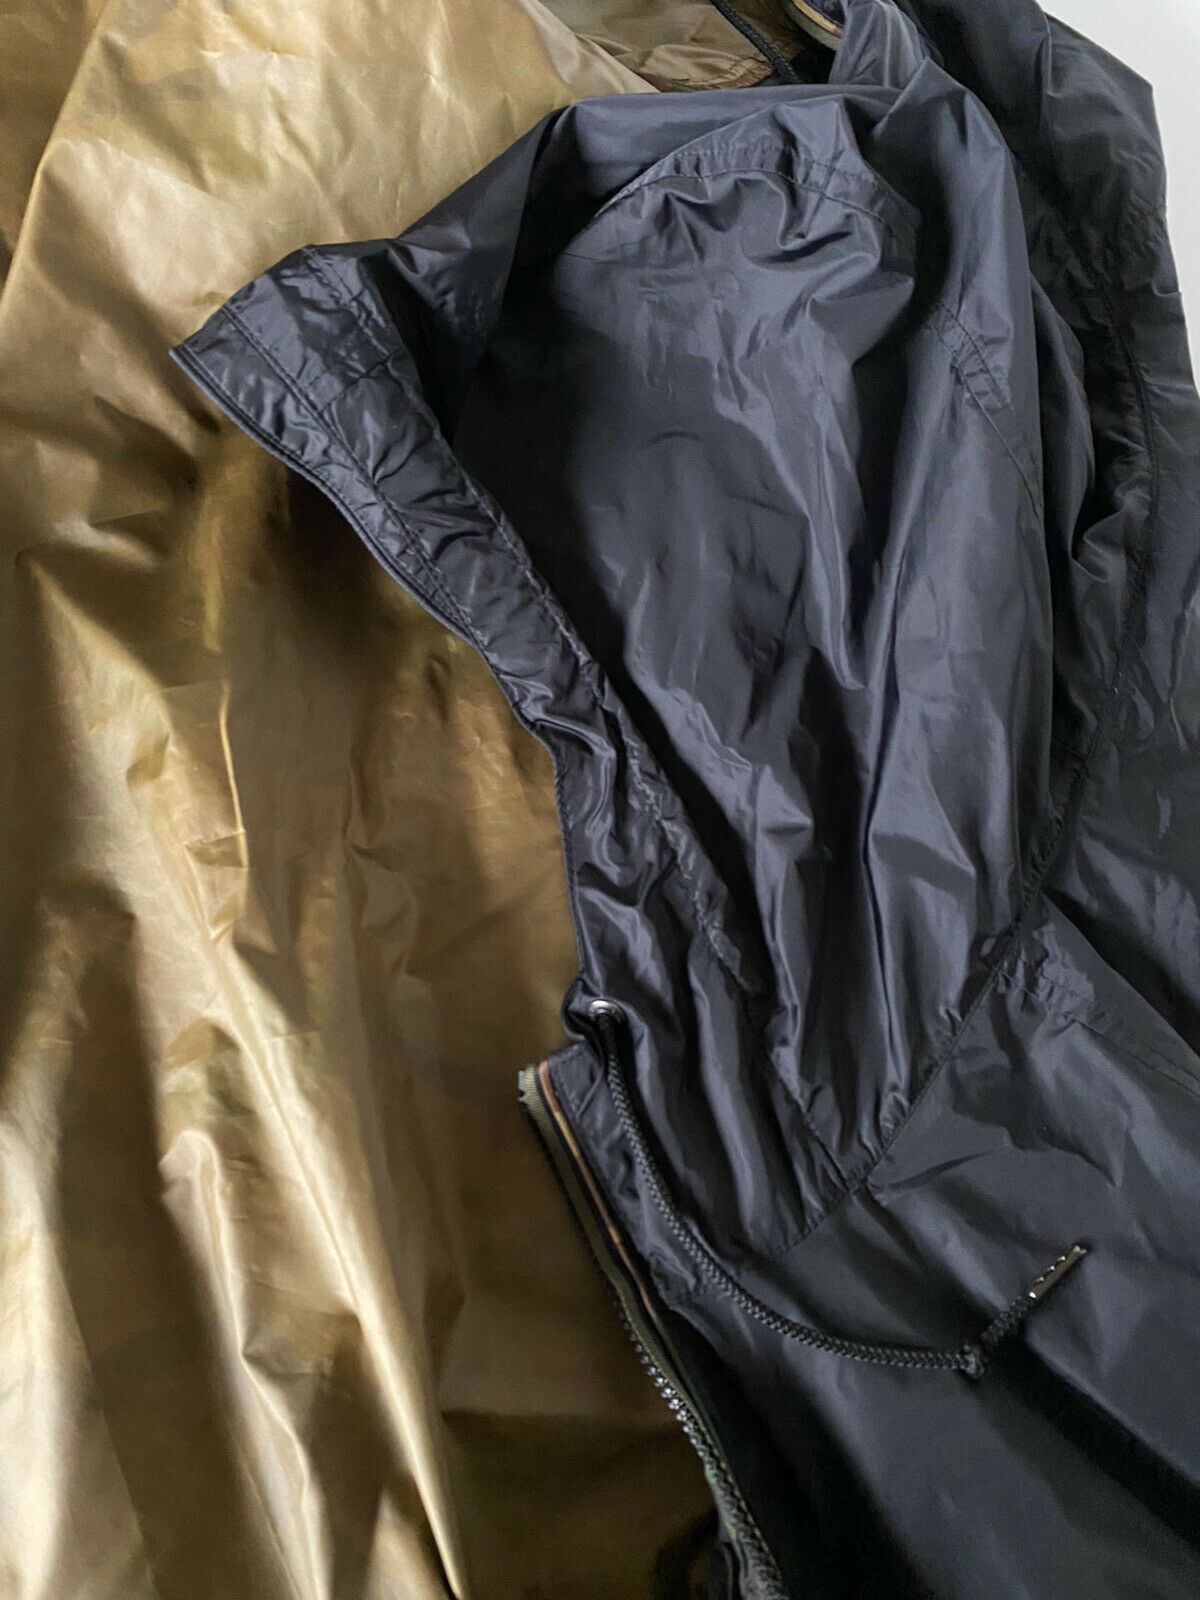 Мужская нейлоновая куртка с капюшоном с камуфляжным принтом Polo Ralph Lauren, NWT 208 долларов США 2XB